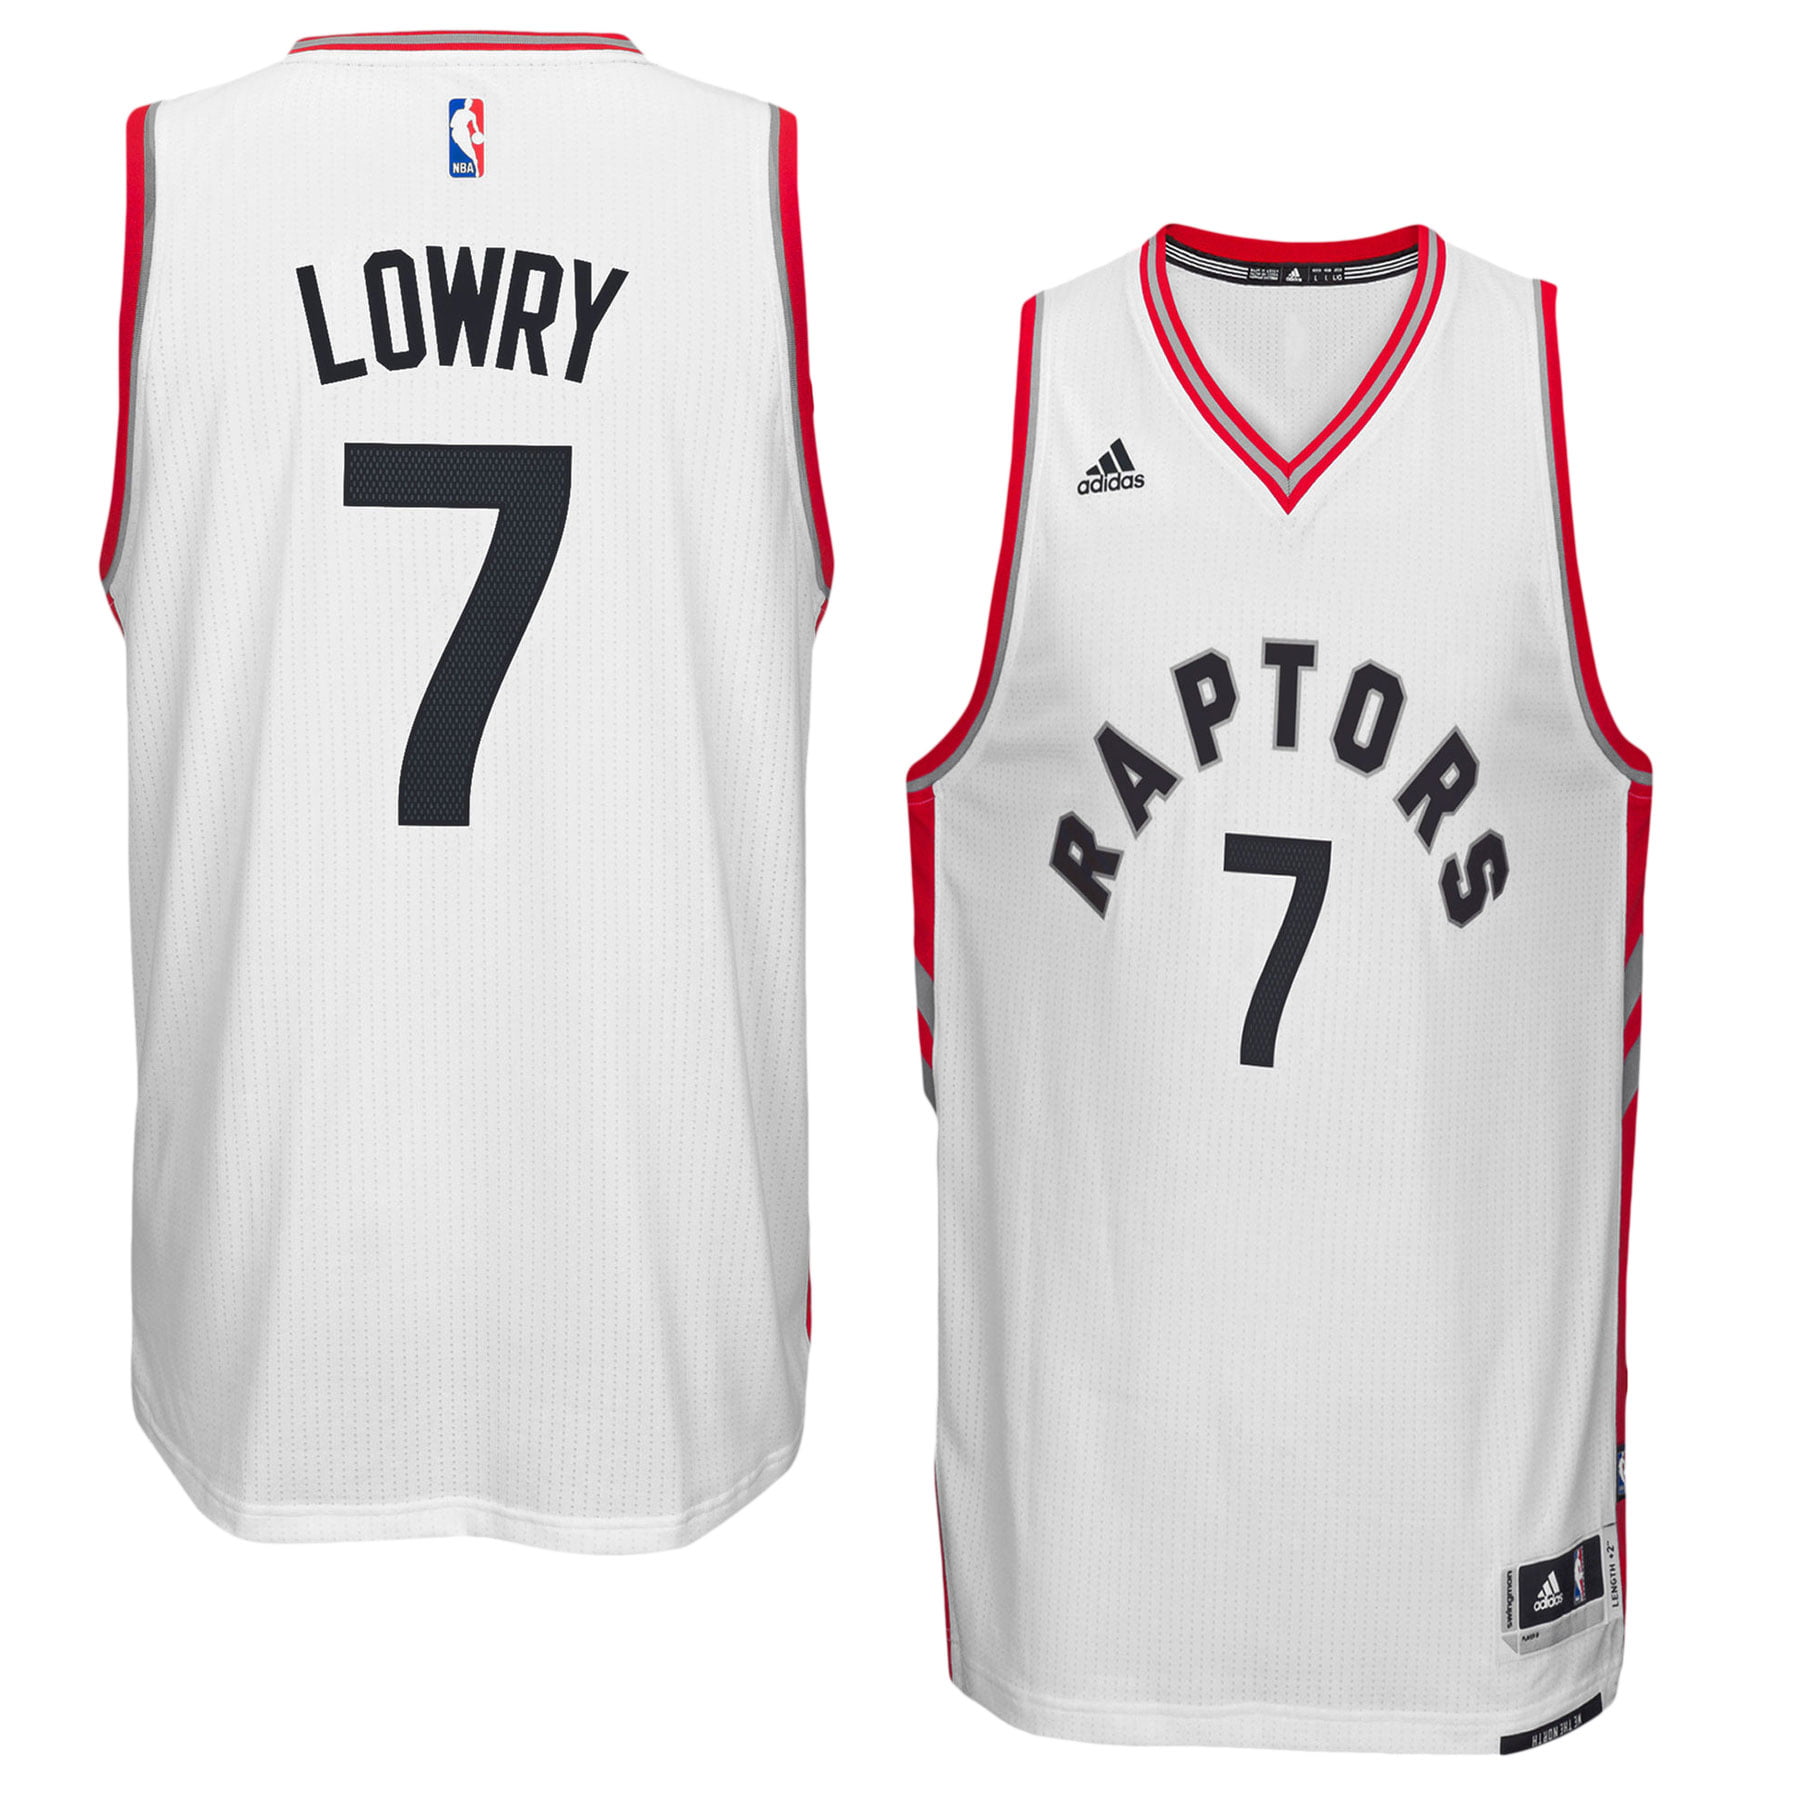 Kyle Lowry Toronto Raptors NBA Swingman Replica Jersey White Adidas